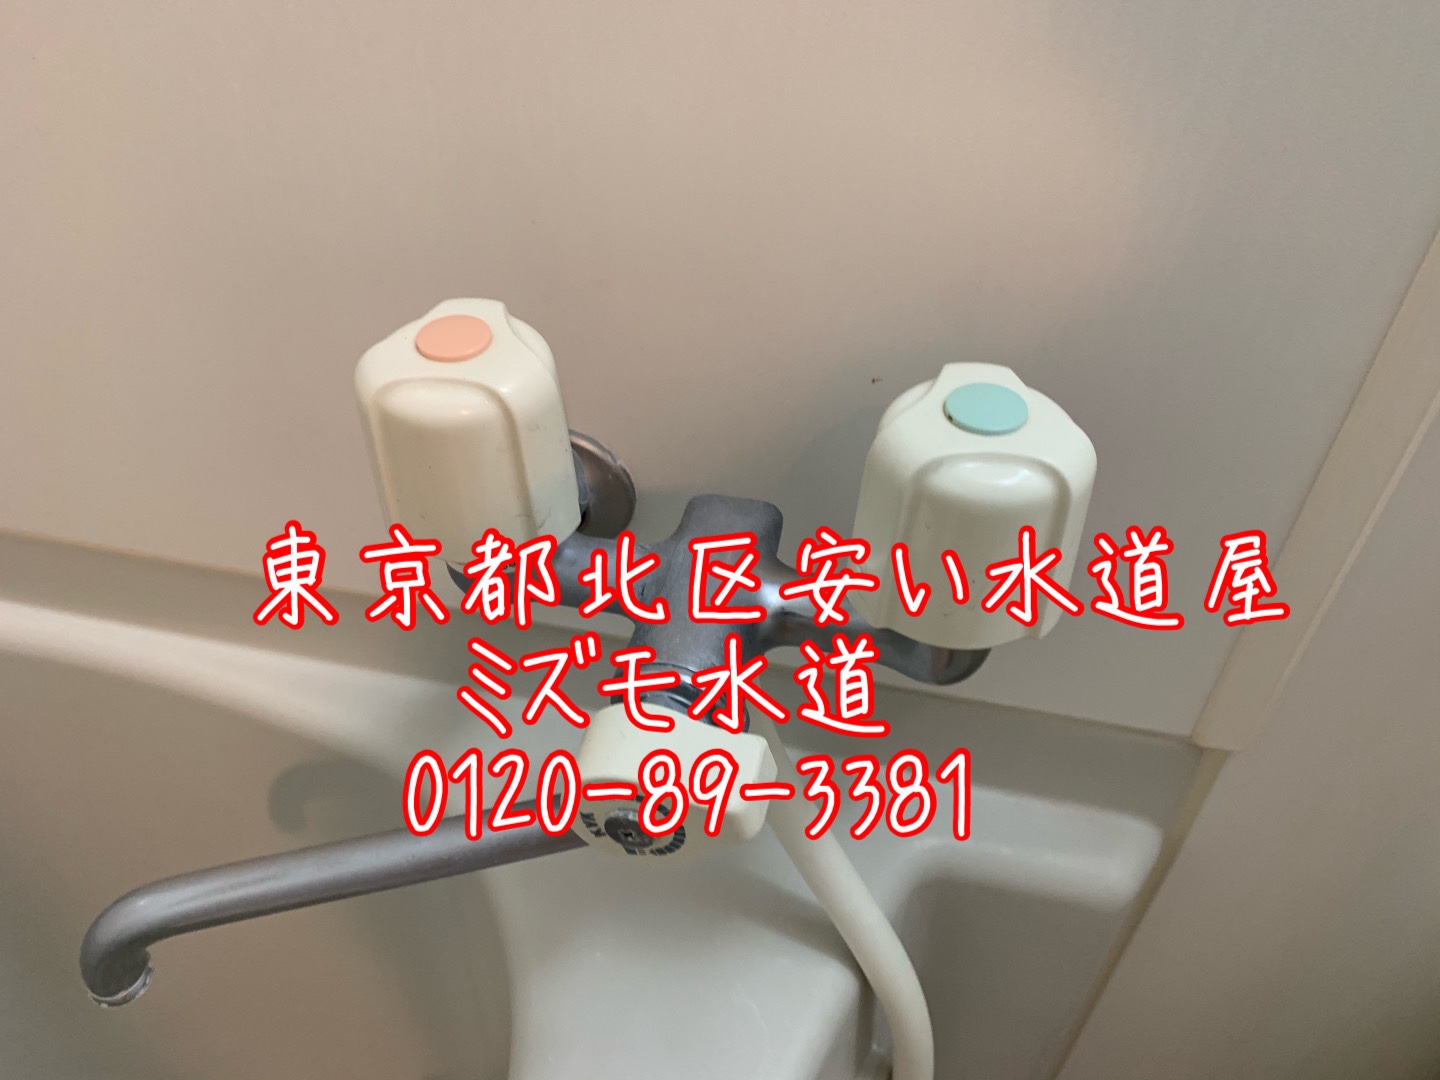 東京都北区上十条の風呂蛇口水漏れパッキン交換